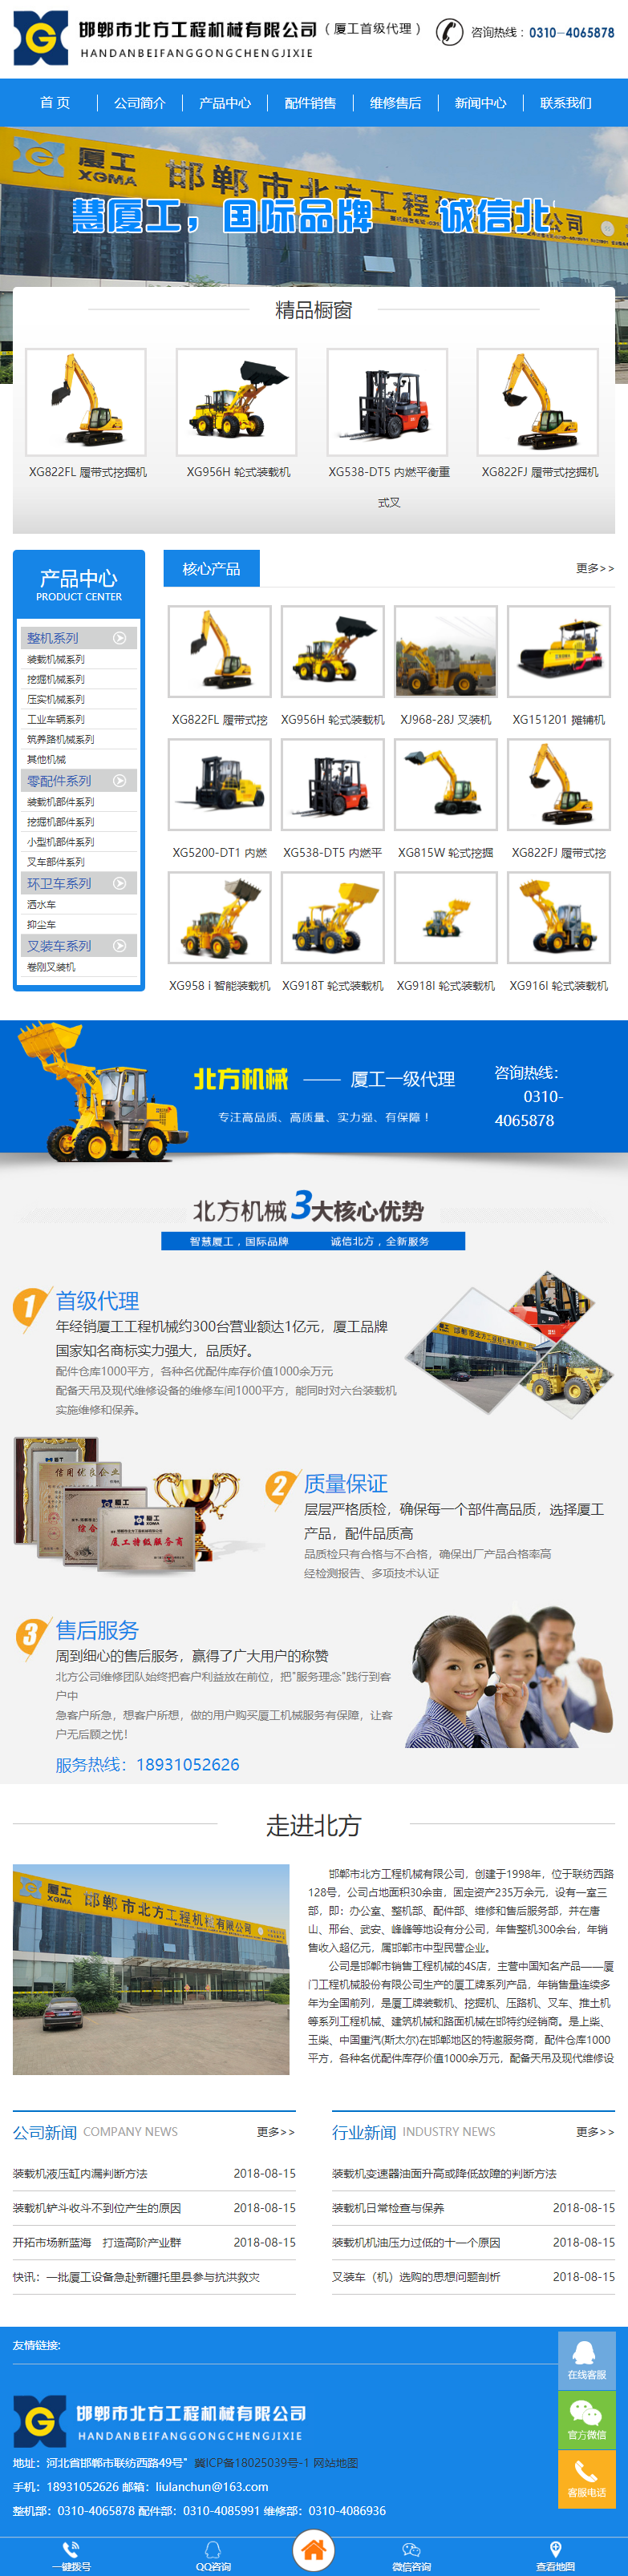 邯郸市北方工程机械有限公司网站案例